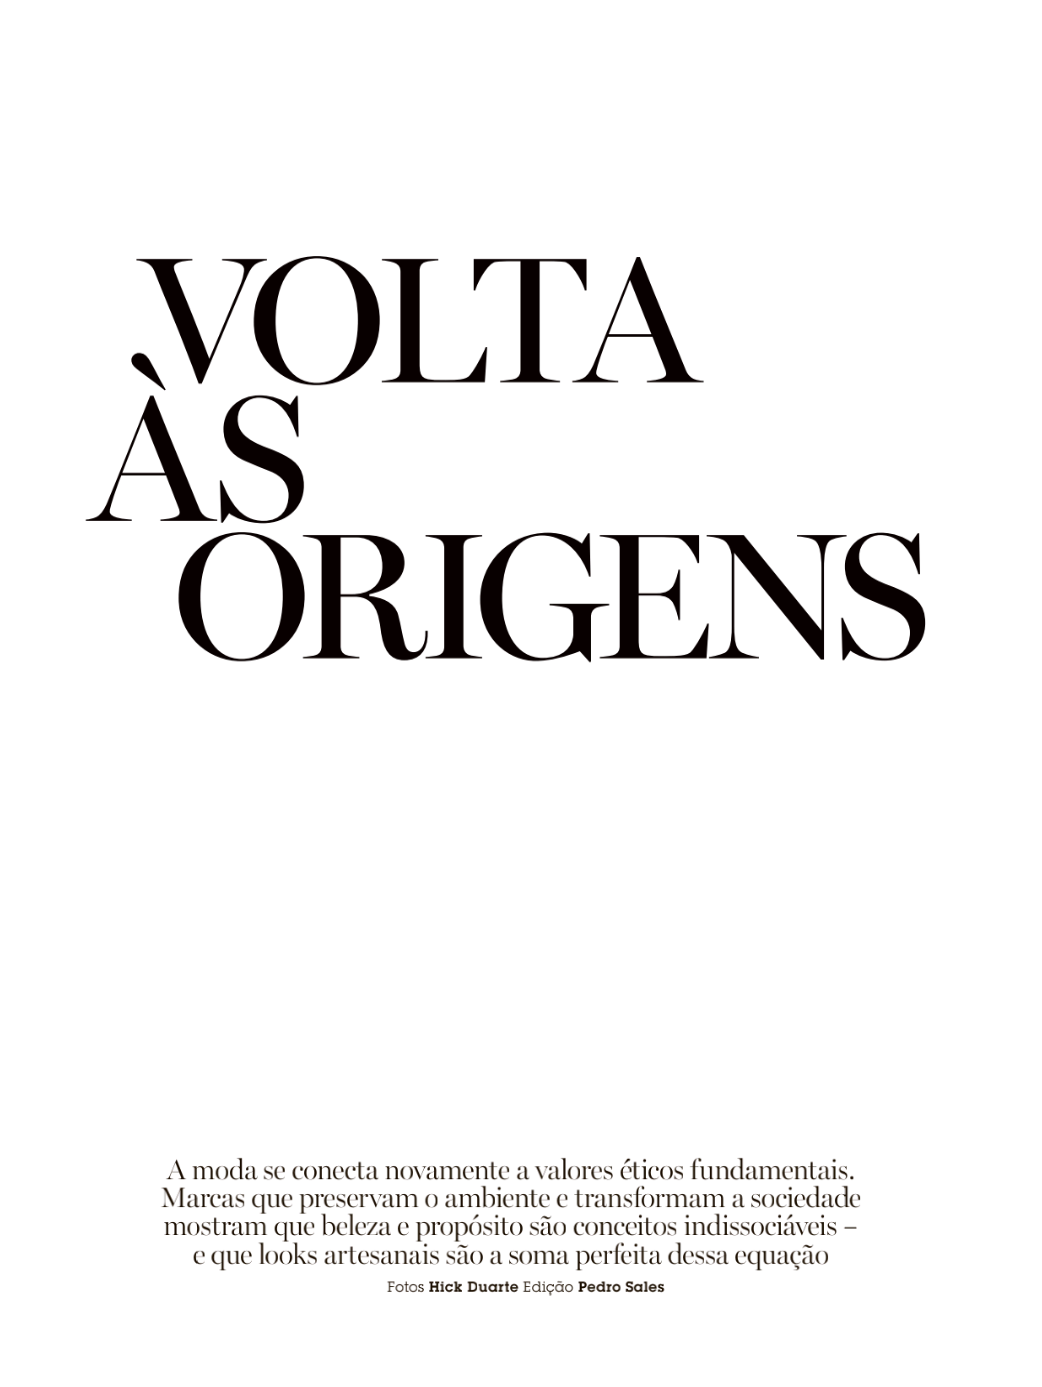 Dandara-Queiroz-by-Hick-Duarte-Vogue-Brazil-January-2022 (5).png